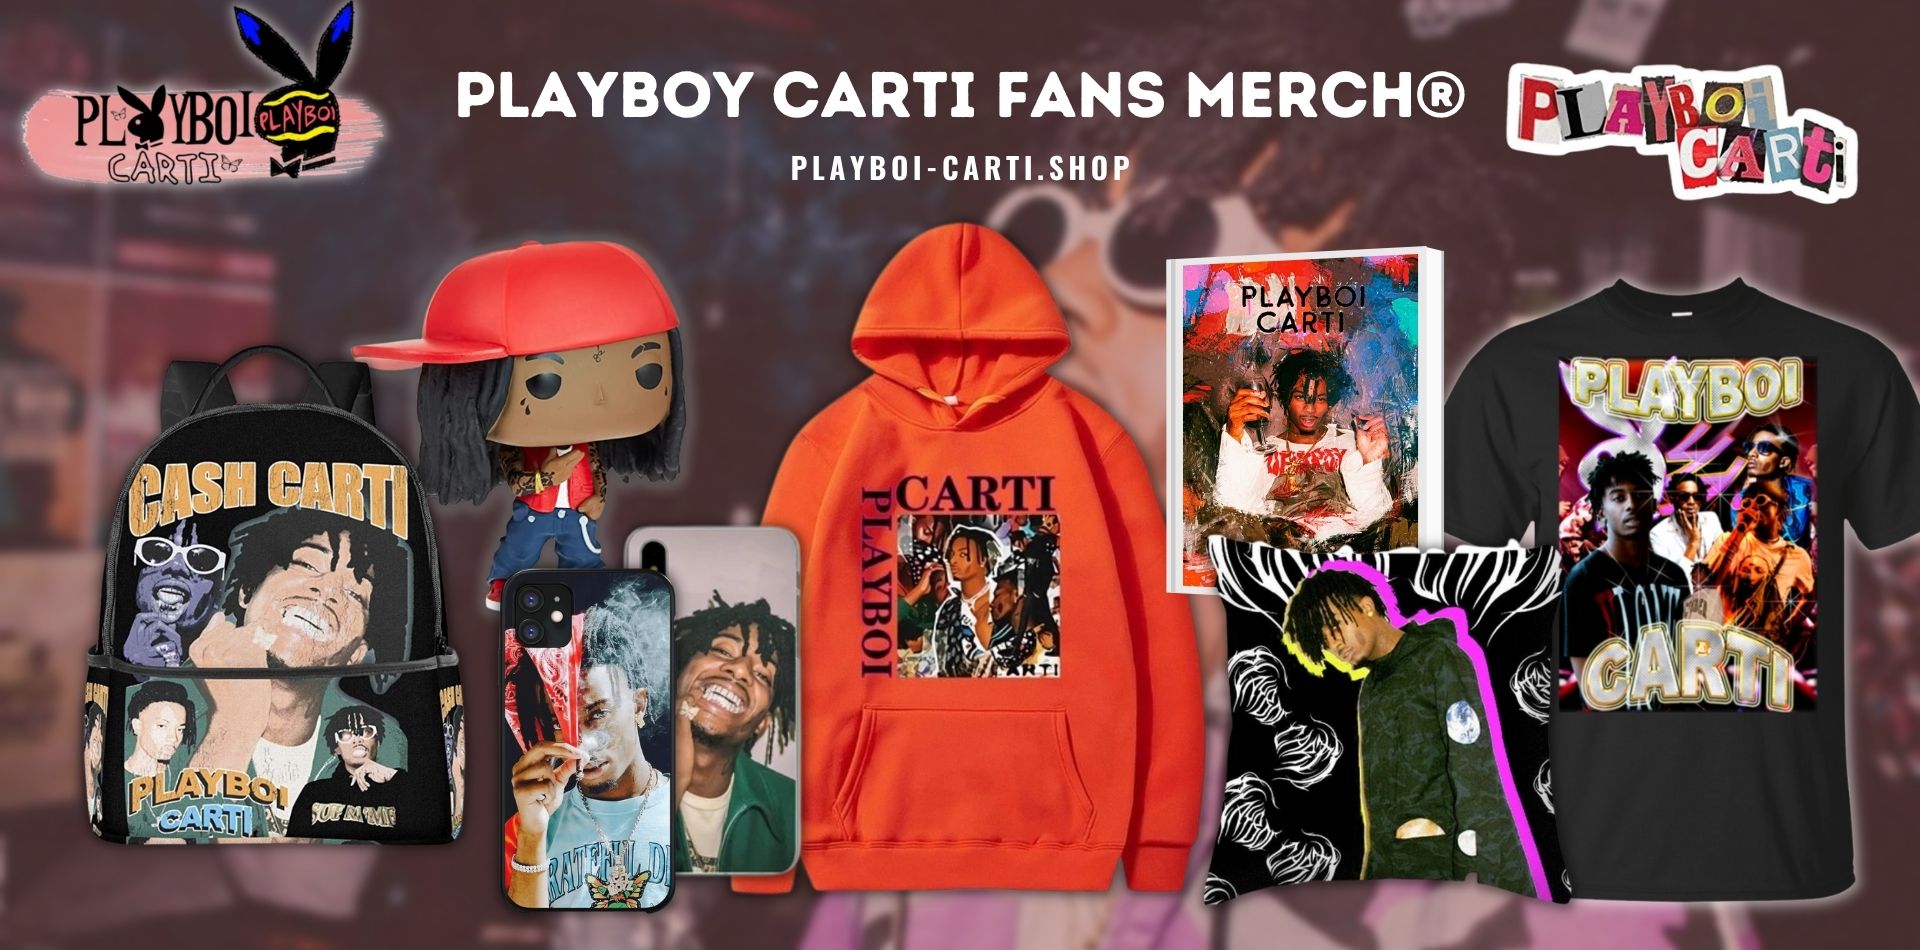 Playboi Carti Shop Web Banner - Playboi Carti Shop